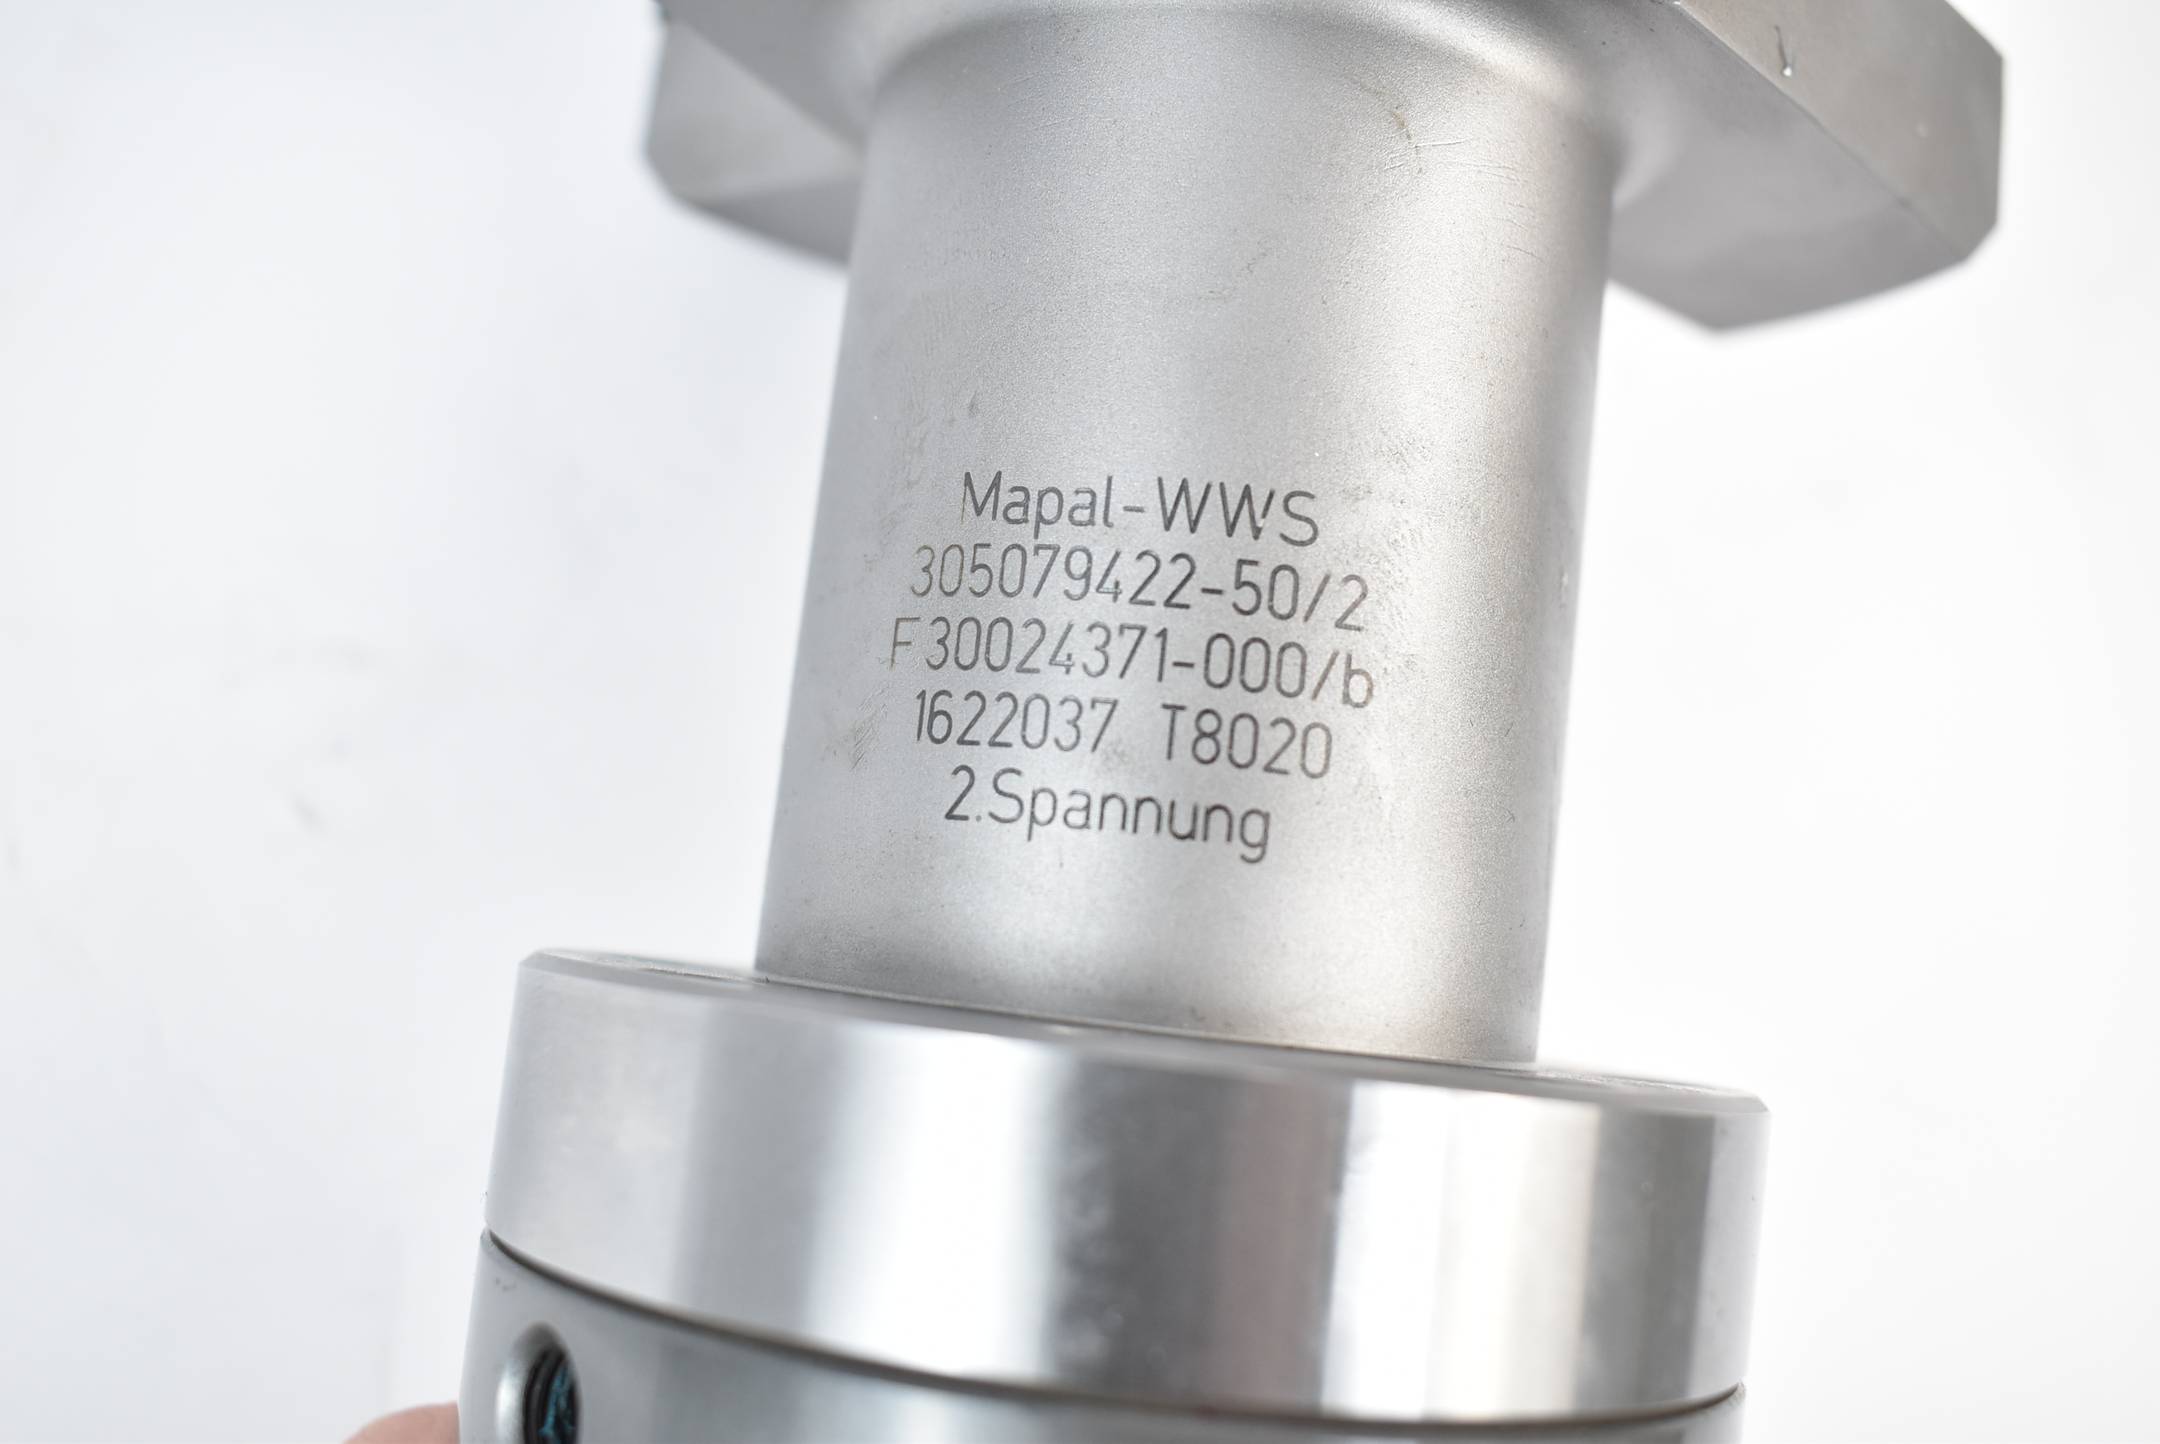 Mapal-WWS 305079422-50/2 ( F30024371-000/b )  T 8020 1622037 2. Spannung